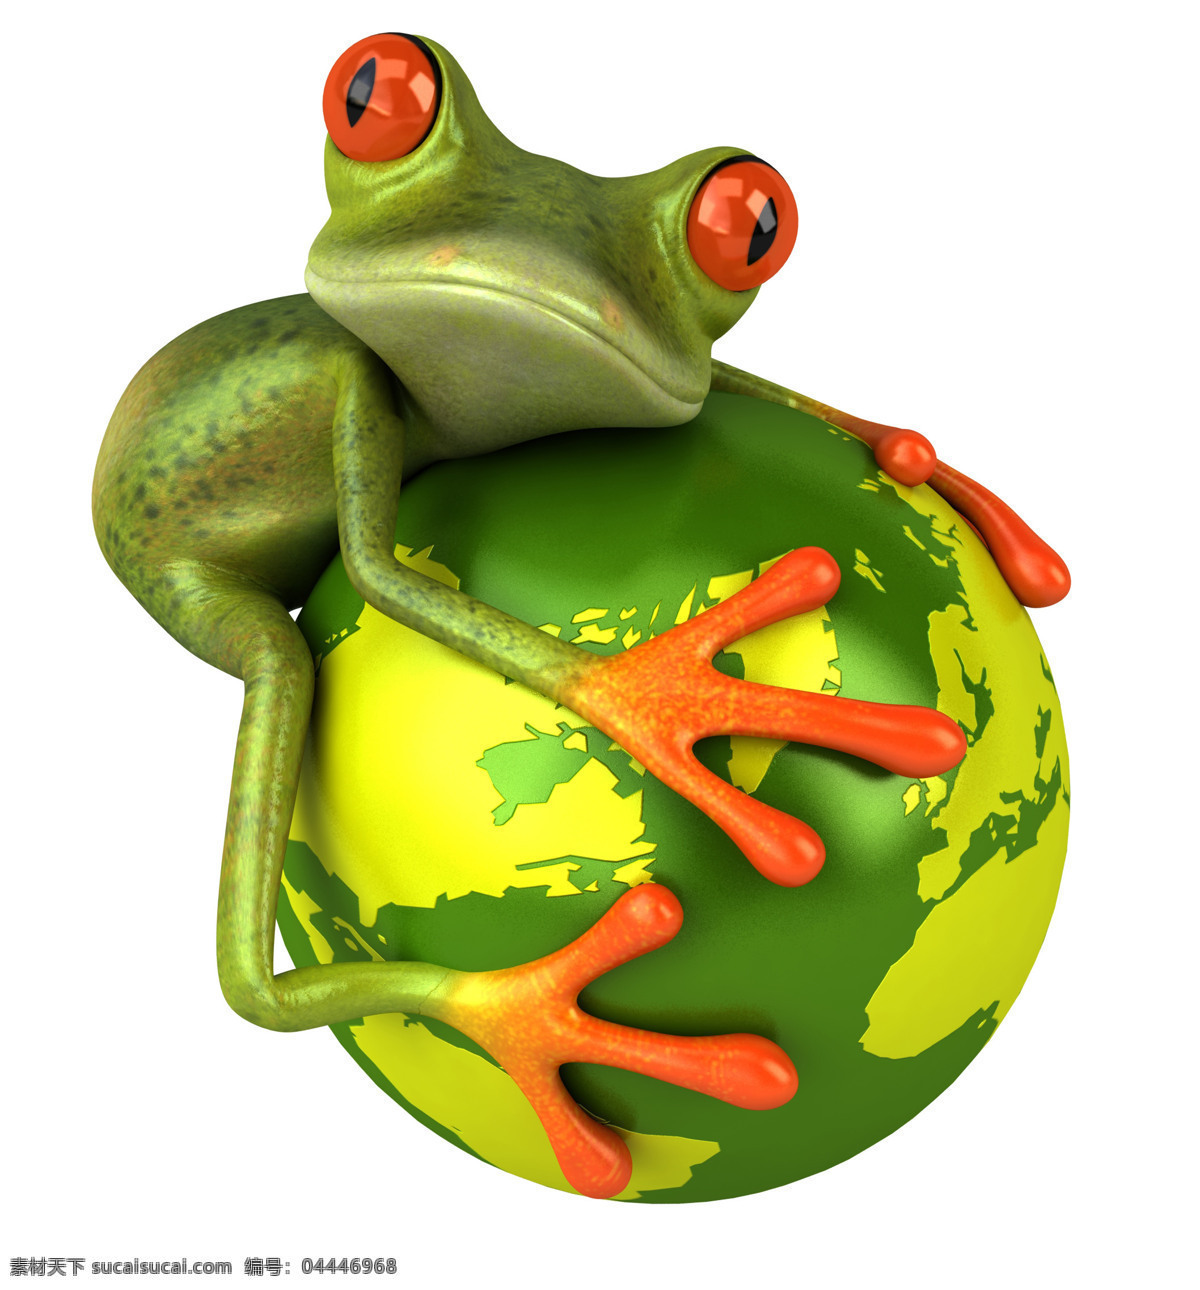 3d青蛙图片 3d青蛙 卡通青蛙环抱 地球 疯狂青蛙 可爱逗趣青蛙 青蛙 创意 逗趣 青蛙王子 卡通 可爱 3d设计 高清图片